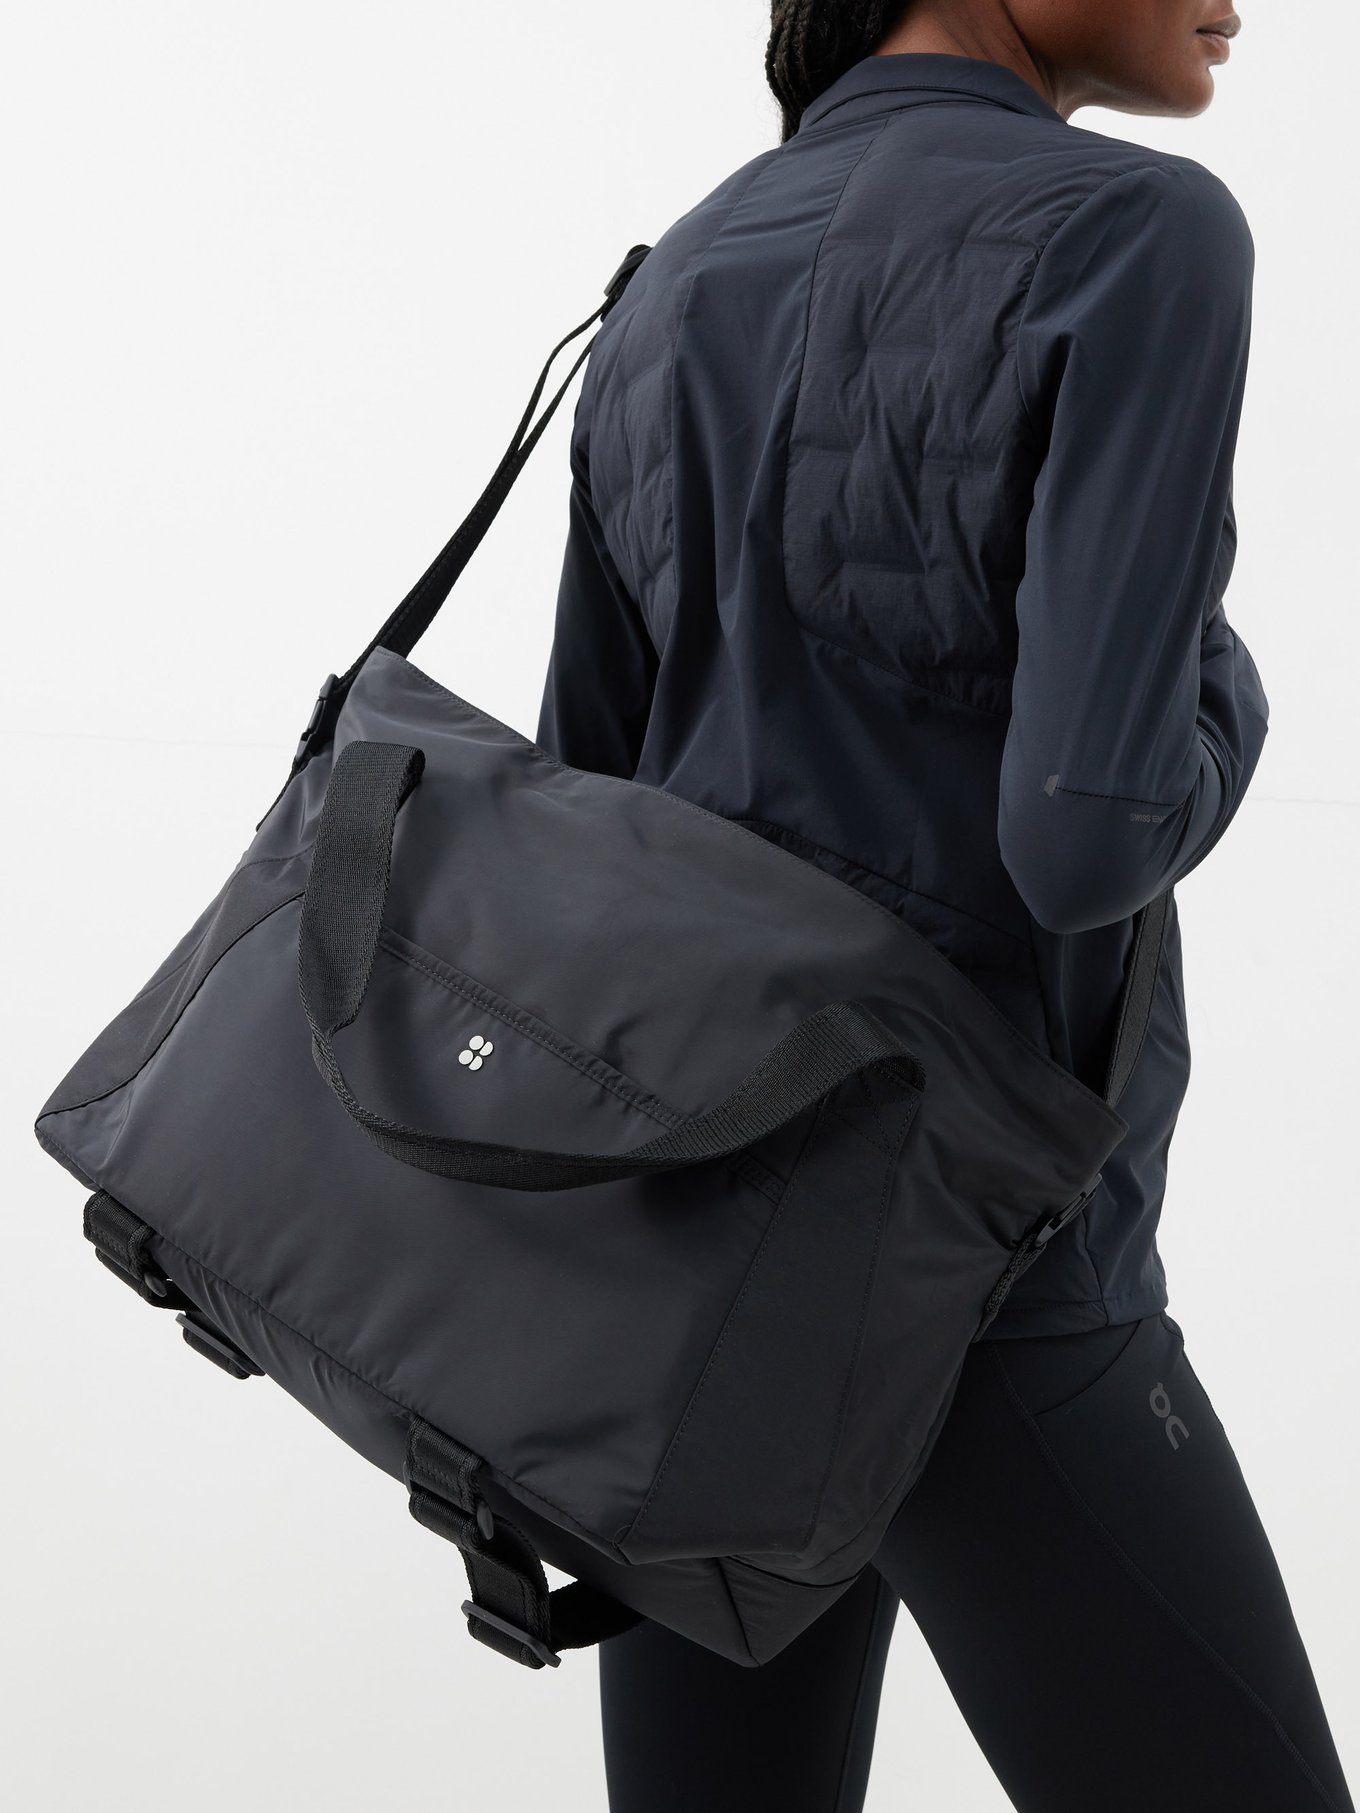 Lululemon Essential Yoga Mat Carrier w/ Straps & Detachable Blk Nylon  Pouch Bag